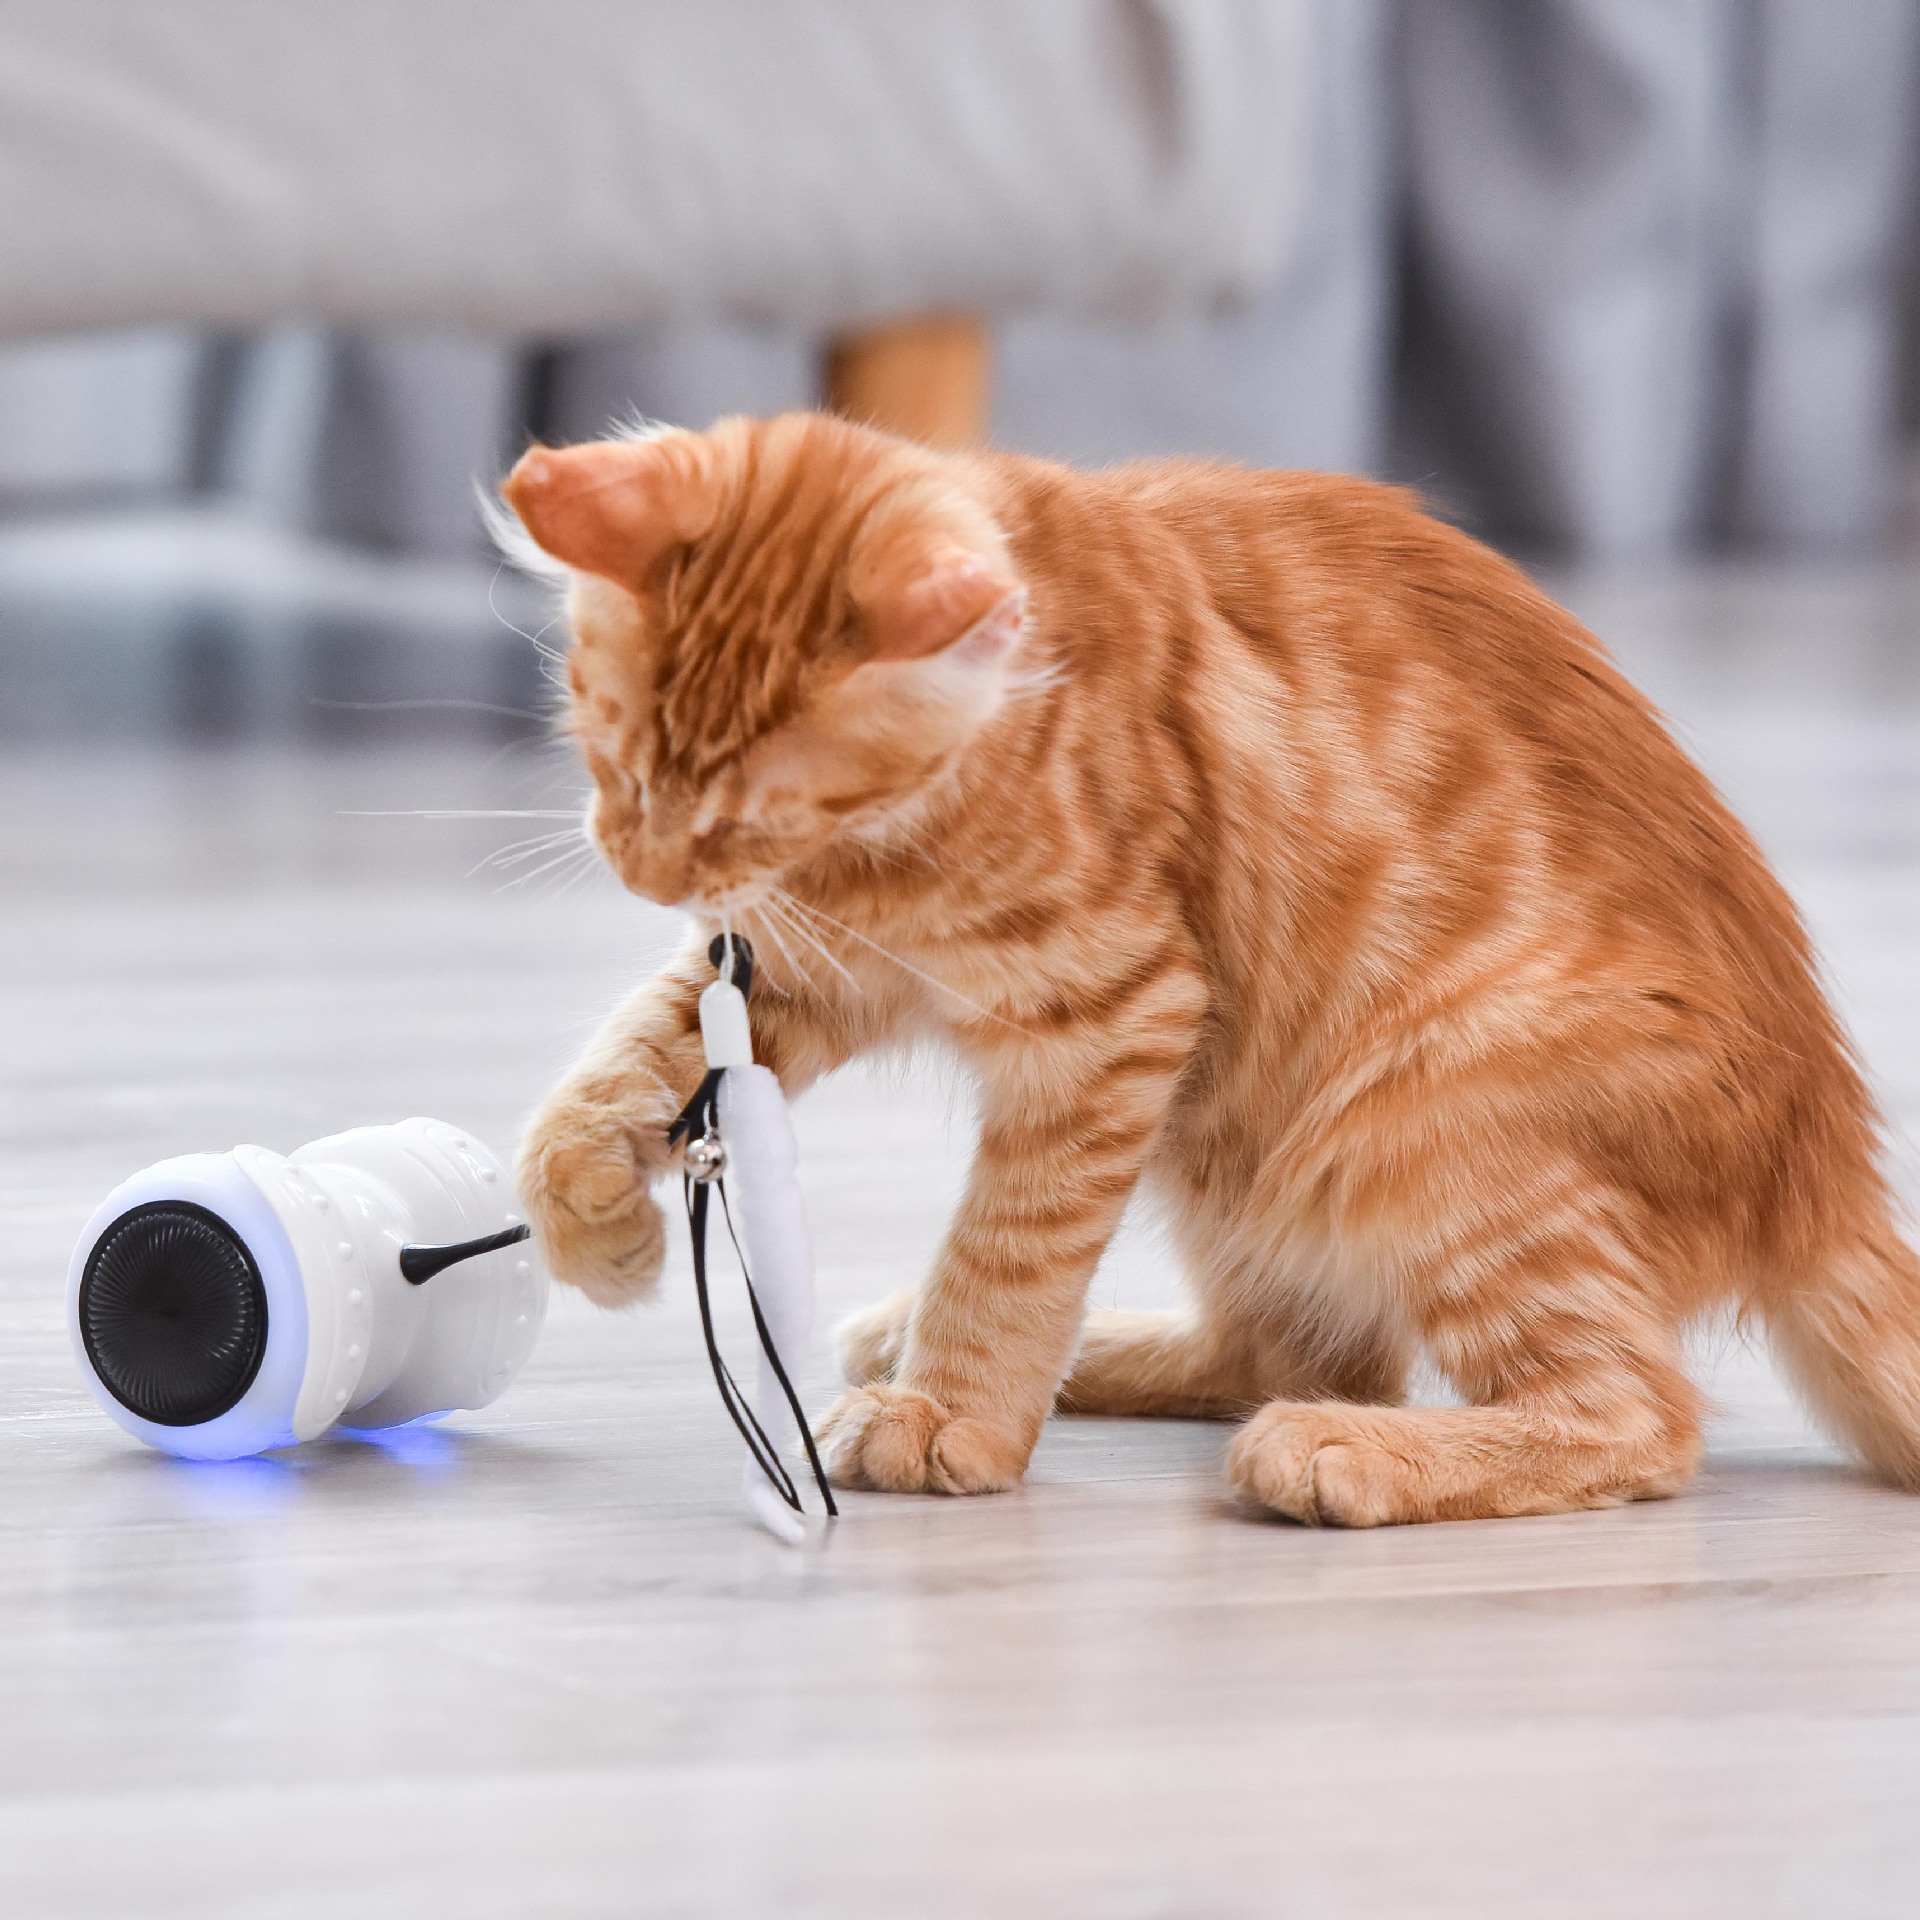 21宠物用品新品亚马逊爆款电动猫咪逗猫棒平衡摇摆车遥控猫咪玩具